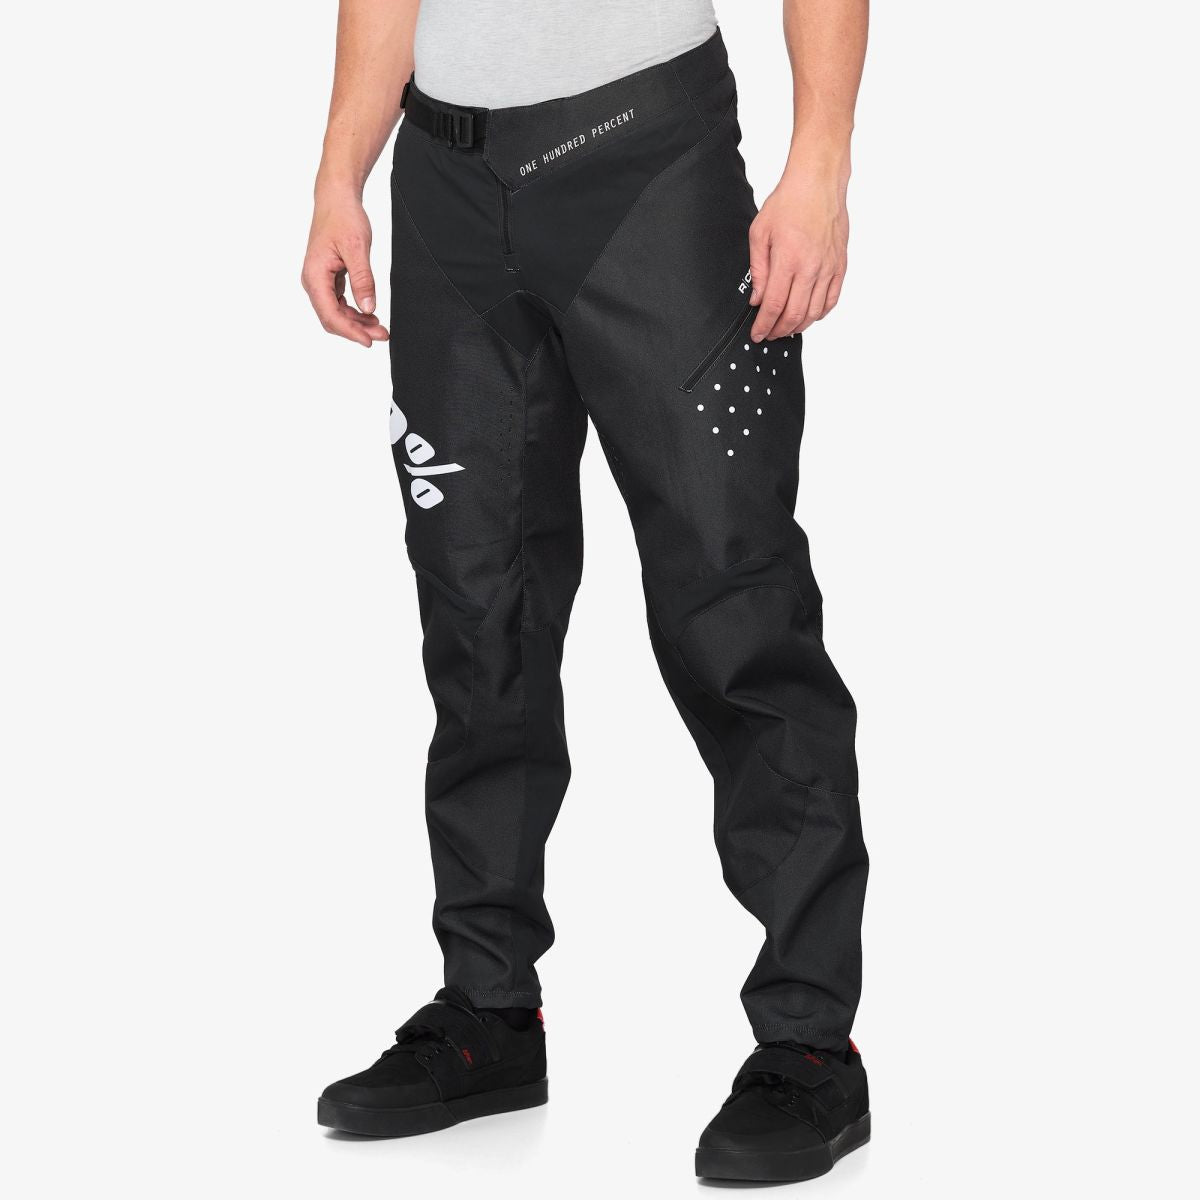 100% R-Core Black Pantalon - Tienda Ride